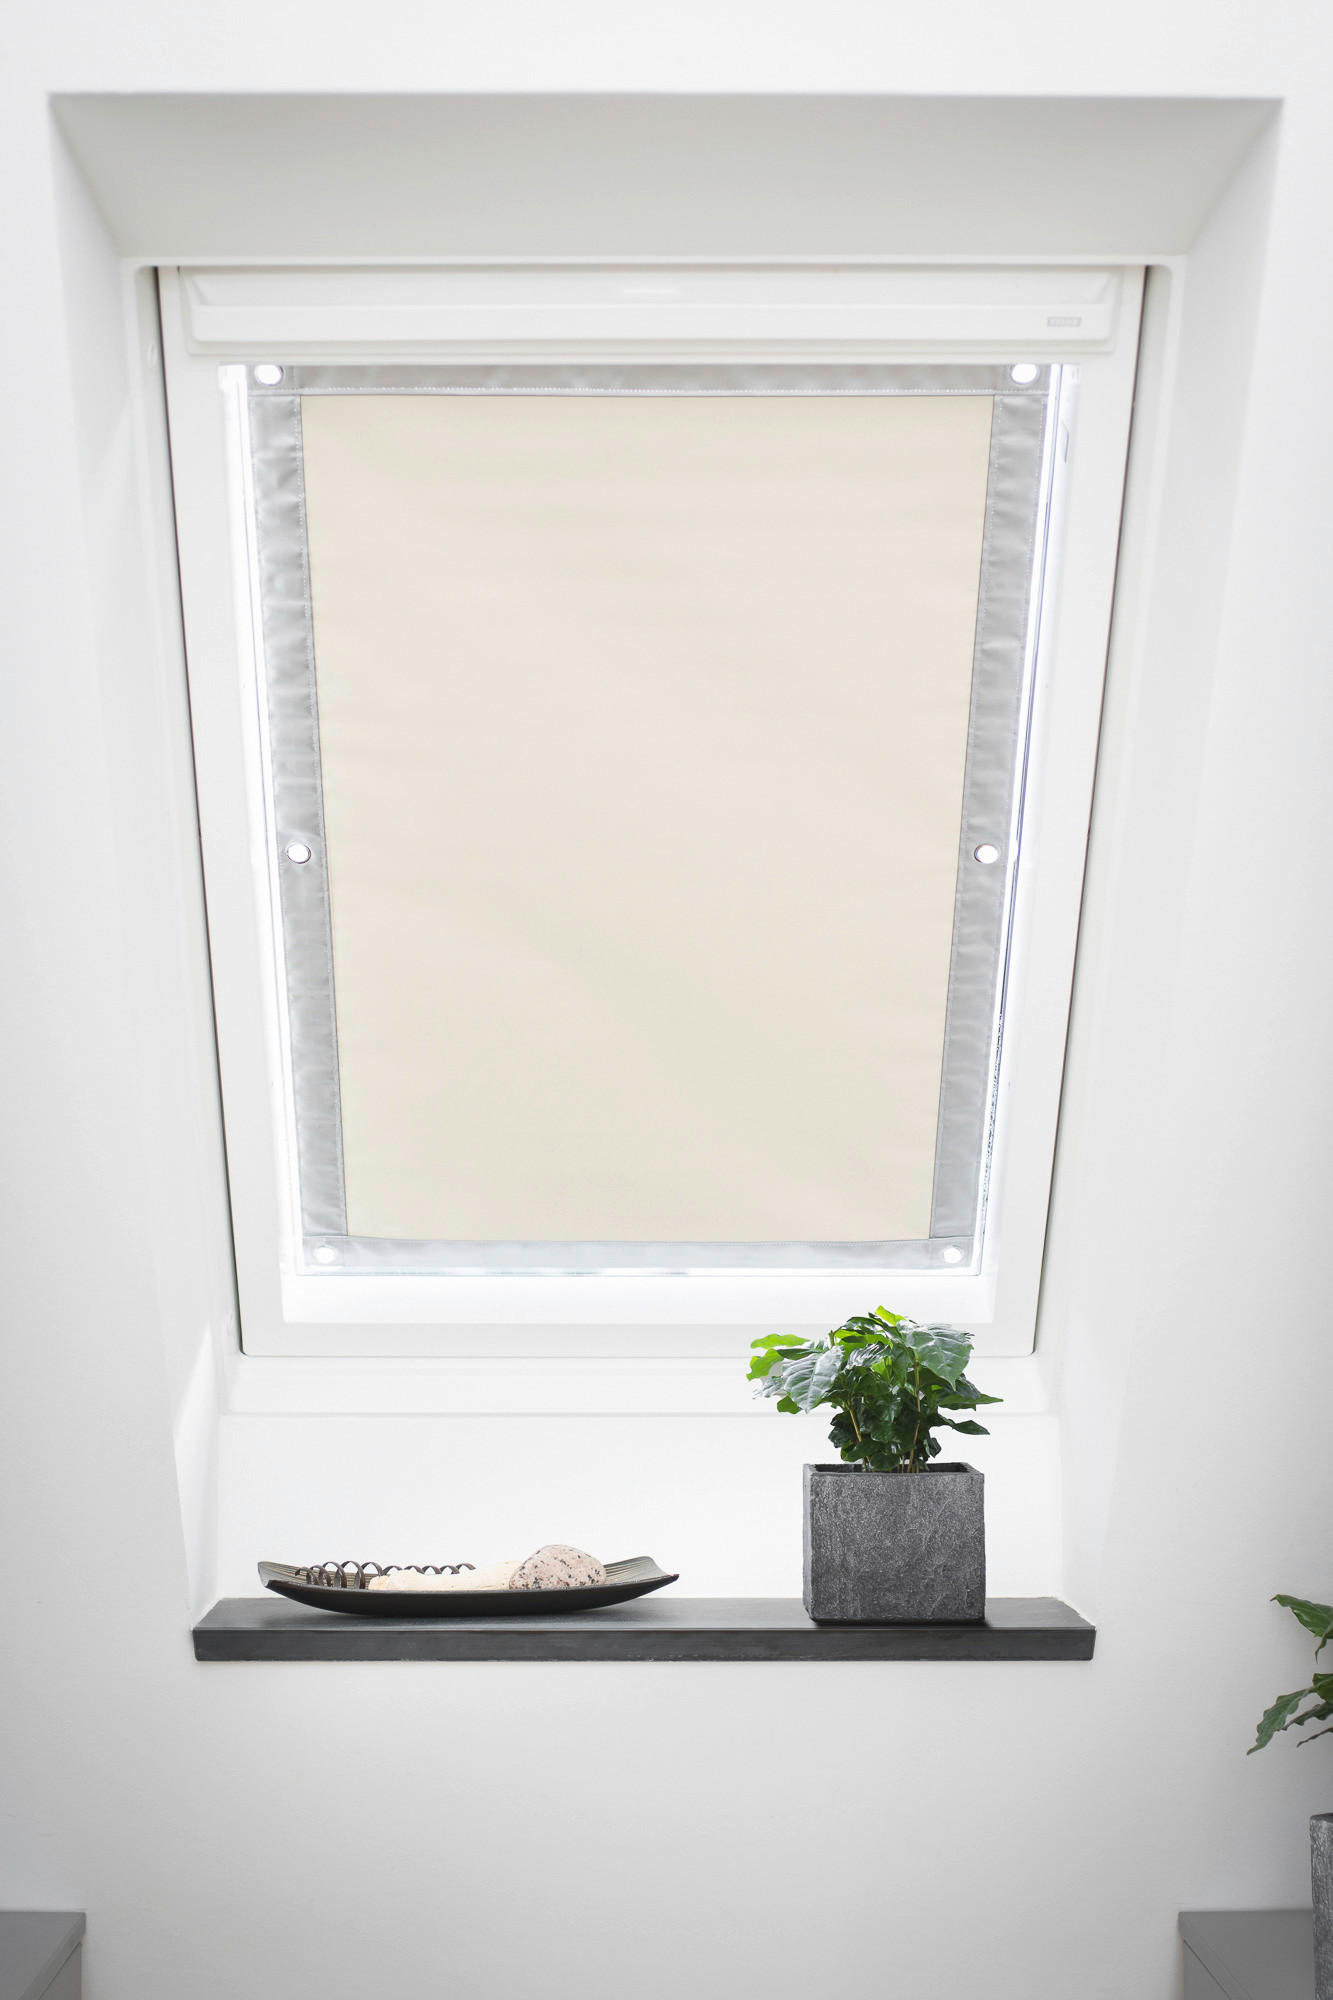 Dachfenster-Sonnenschutz VD beige B/L: ca. 94x118,9 cm